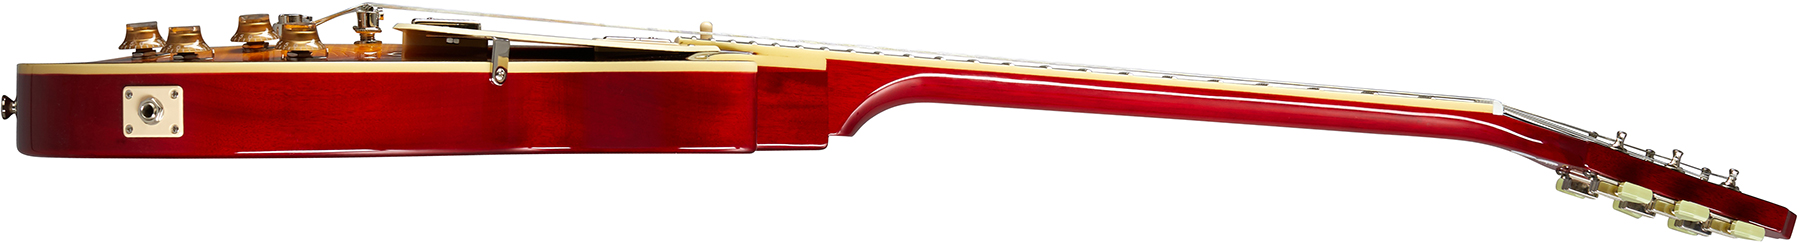 Epiphone Les Paul Standard 50s 2h Ht Rw - Heritage Cherry Sunburst - Guitarra eléctrica de corte único. - Variation 2